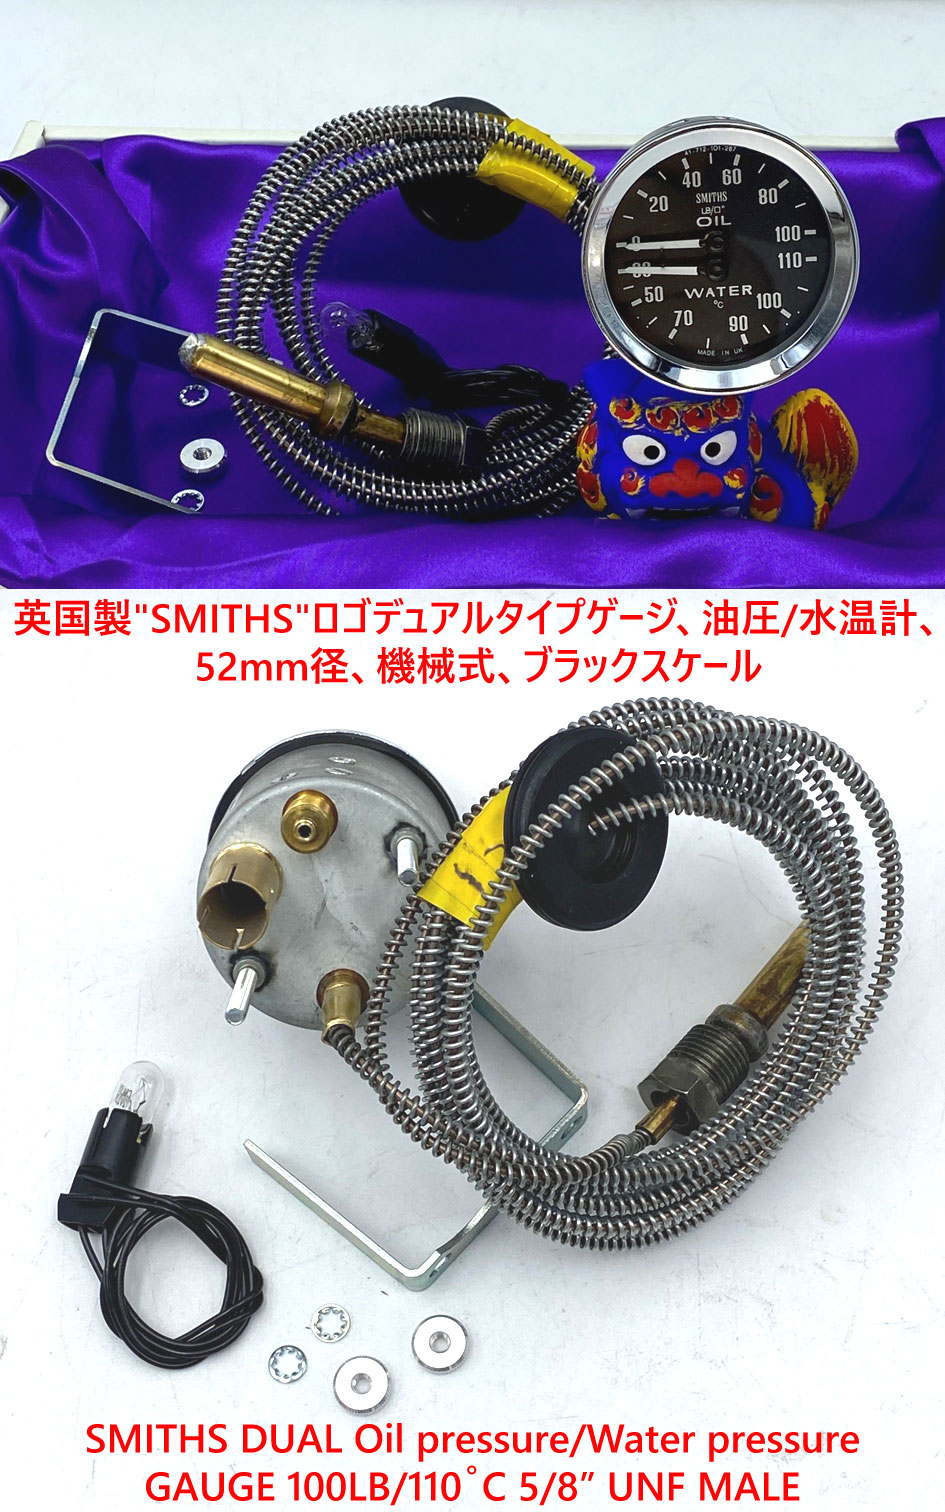 英国製"SMITHS"ロゴデュアルタイプゲージ、油圧/水温計、52mm径、機械式、ブラックスケール画像